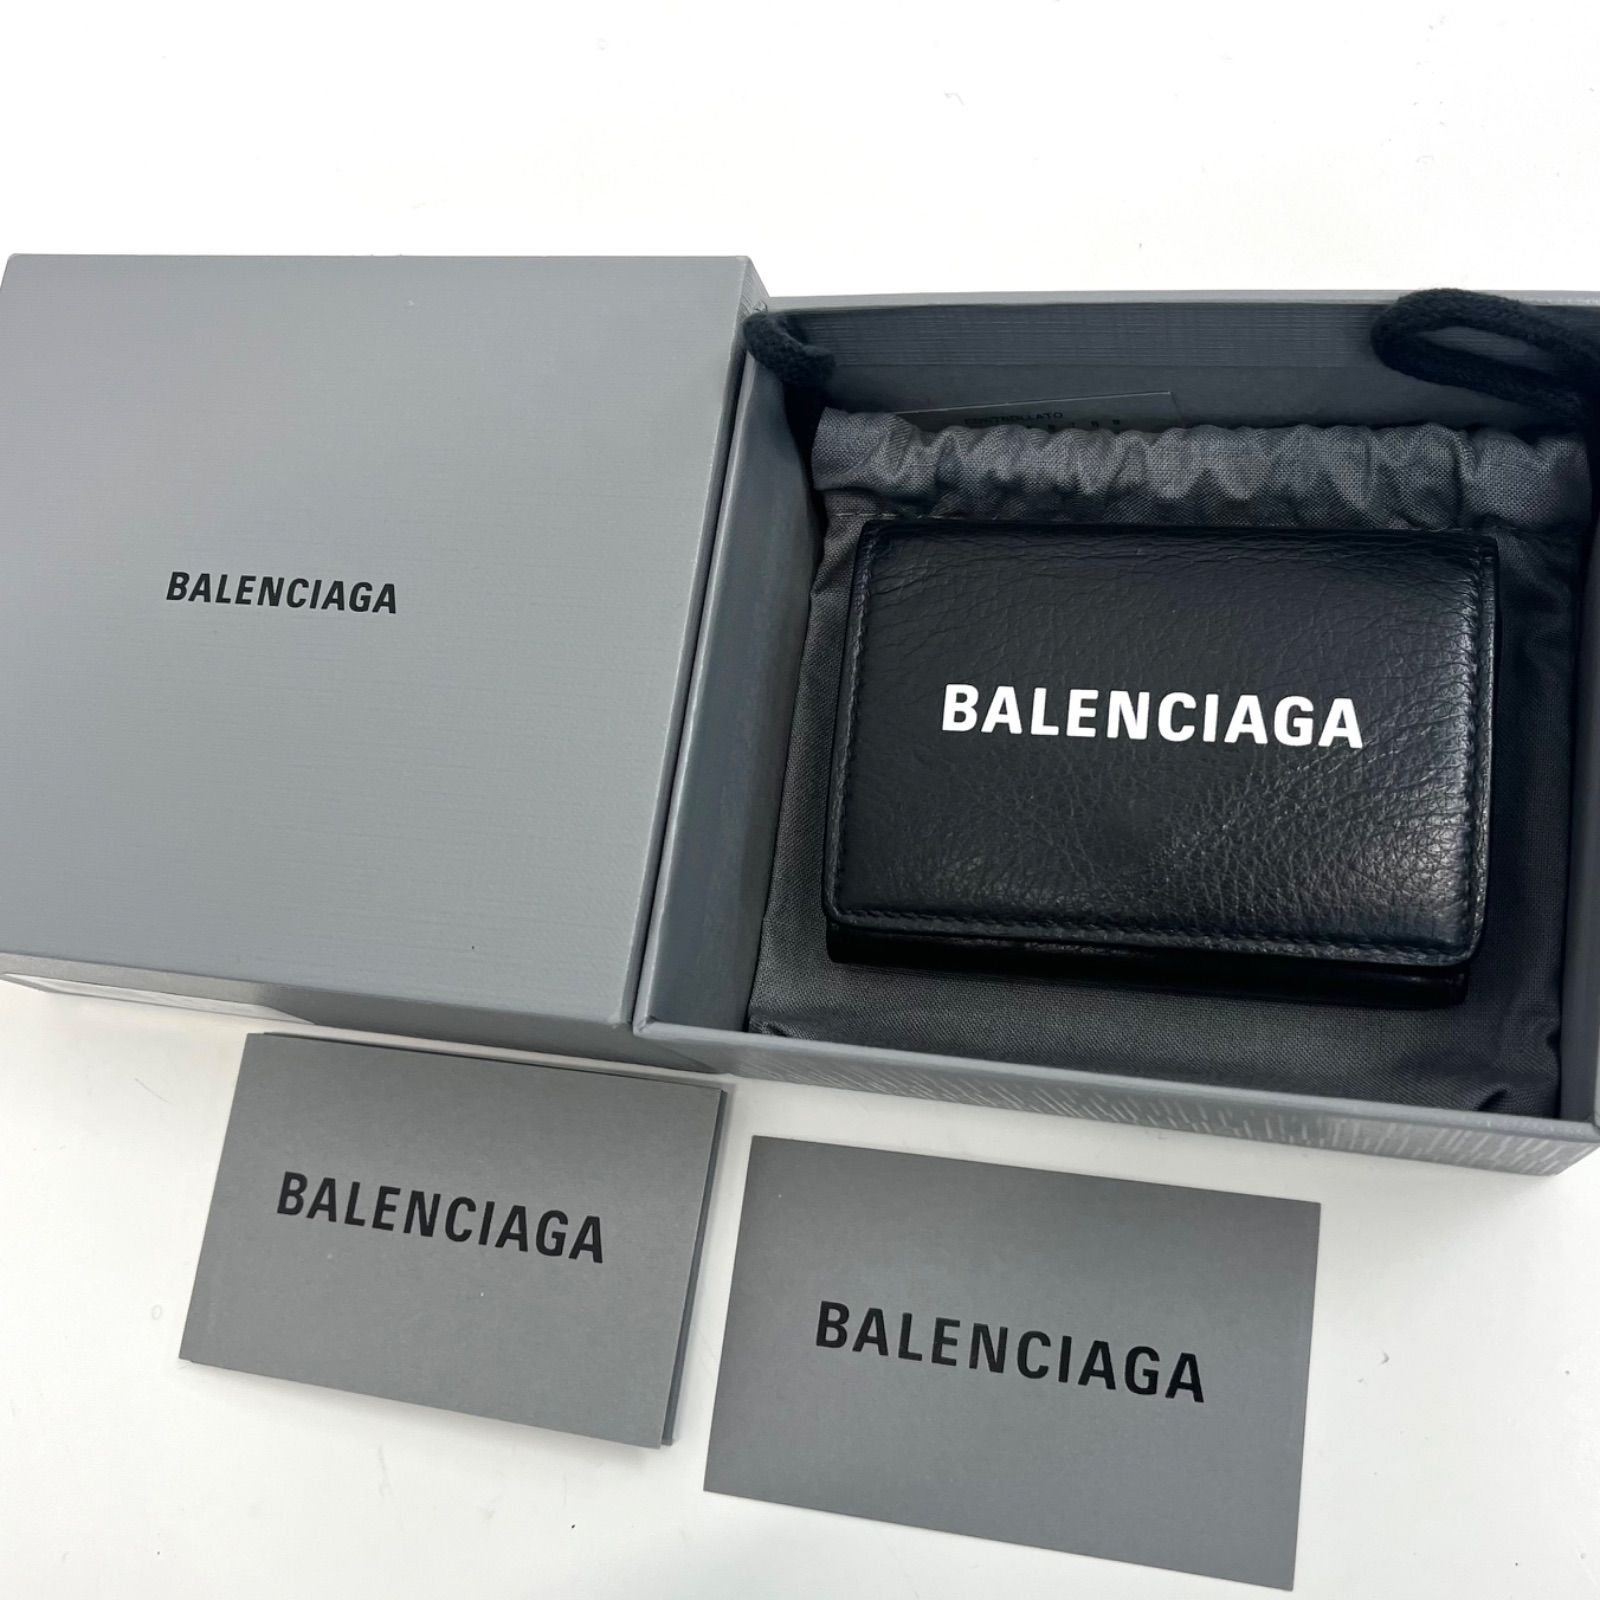 【美品】BALENCIAGA バレンシアガ コンパクトウォレット 三つ折り財布 エブリデイ ブラック 黒 ホワイト ロゴ 箱、付属品付き メンズ  レディース 男女兼用モデル